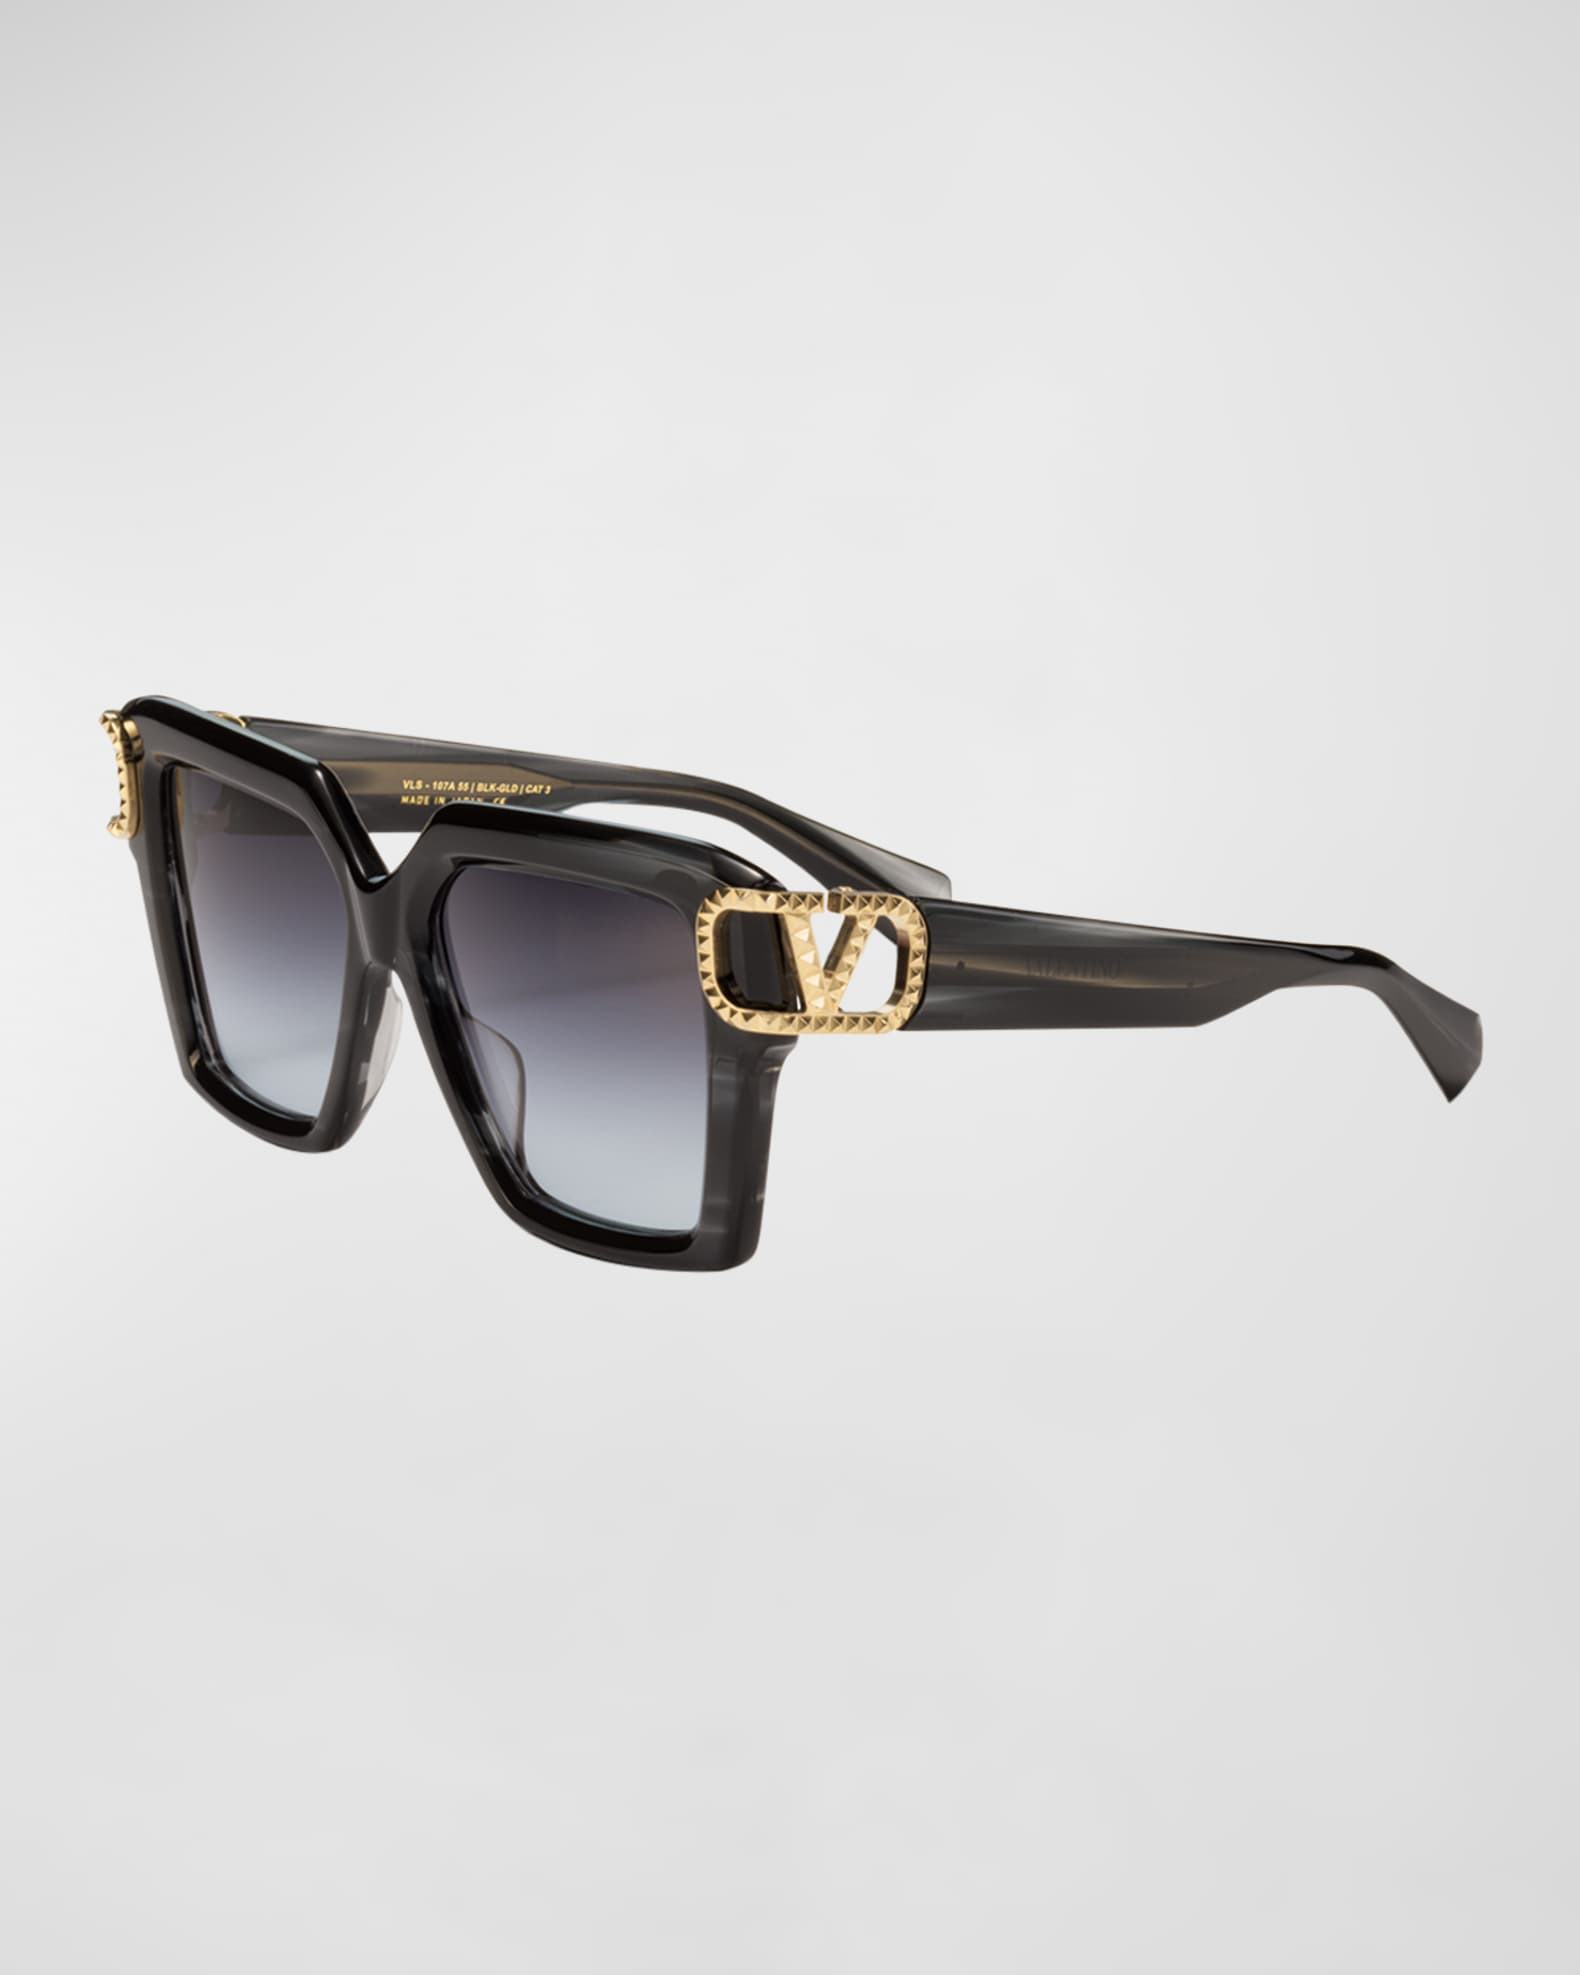 Valentino Garavani Uno Square Acetate & Titanium Sunglasses, Translucent Black, Women's, Sunglasses Square Sunglasses